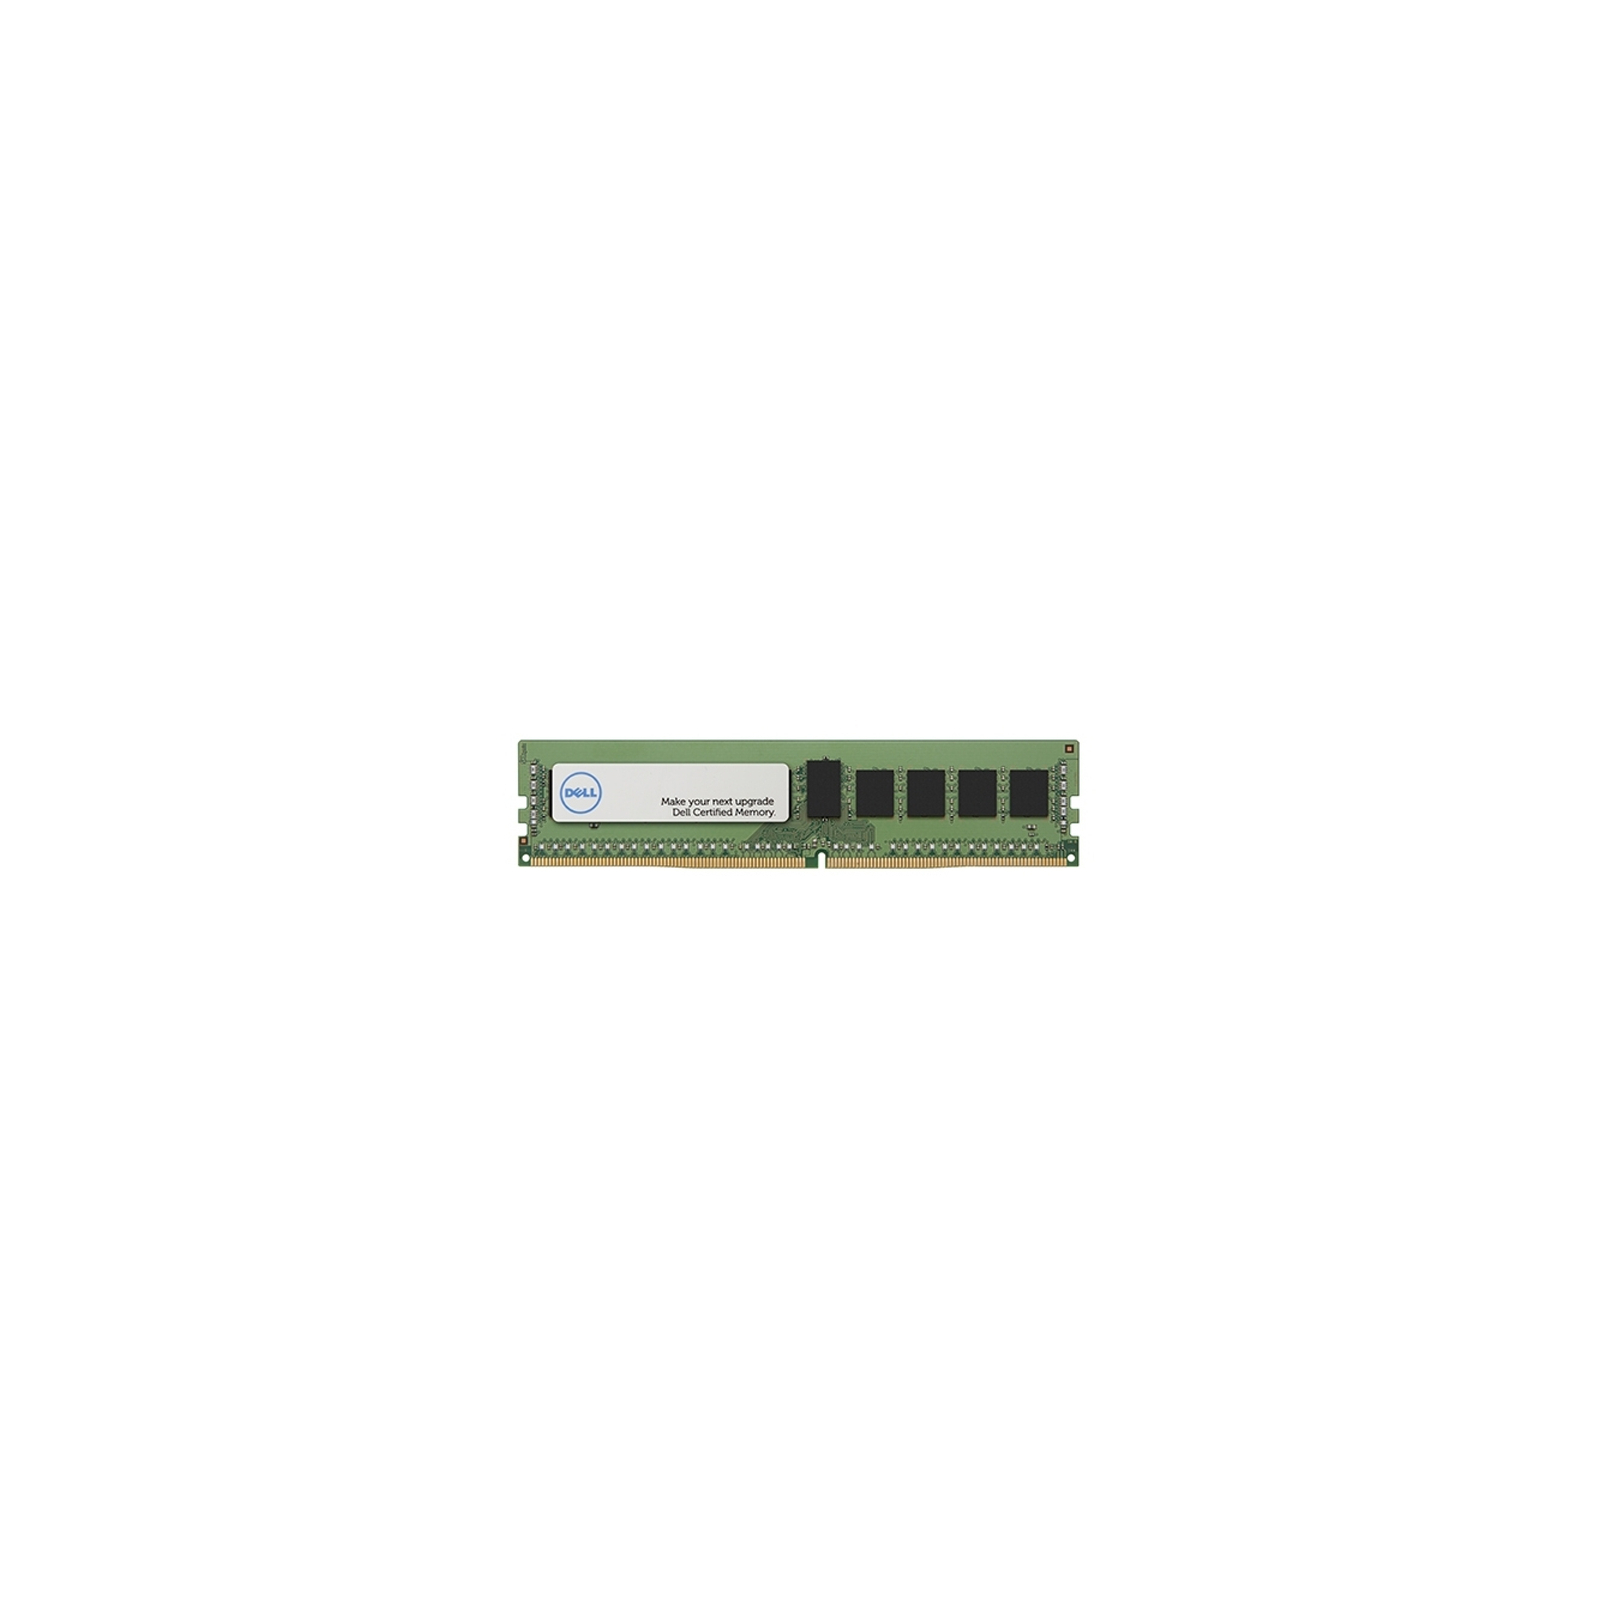 Модуль памяти для сервера DDR4 8GB ECC UDIMM 2133MHz 2Rx8 1.2V CL15 Dell (370-ACFV)